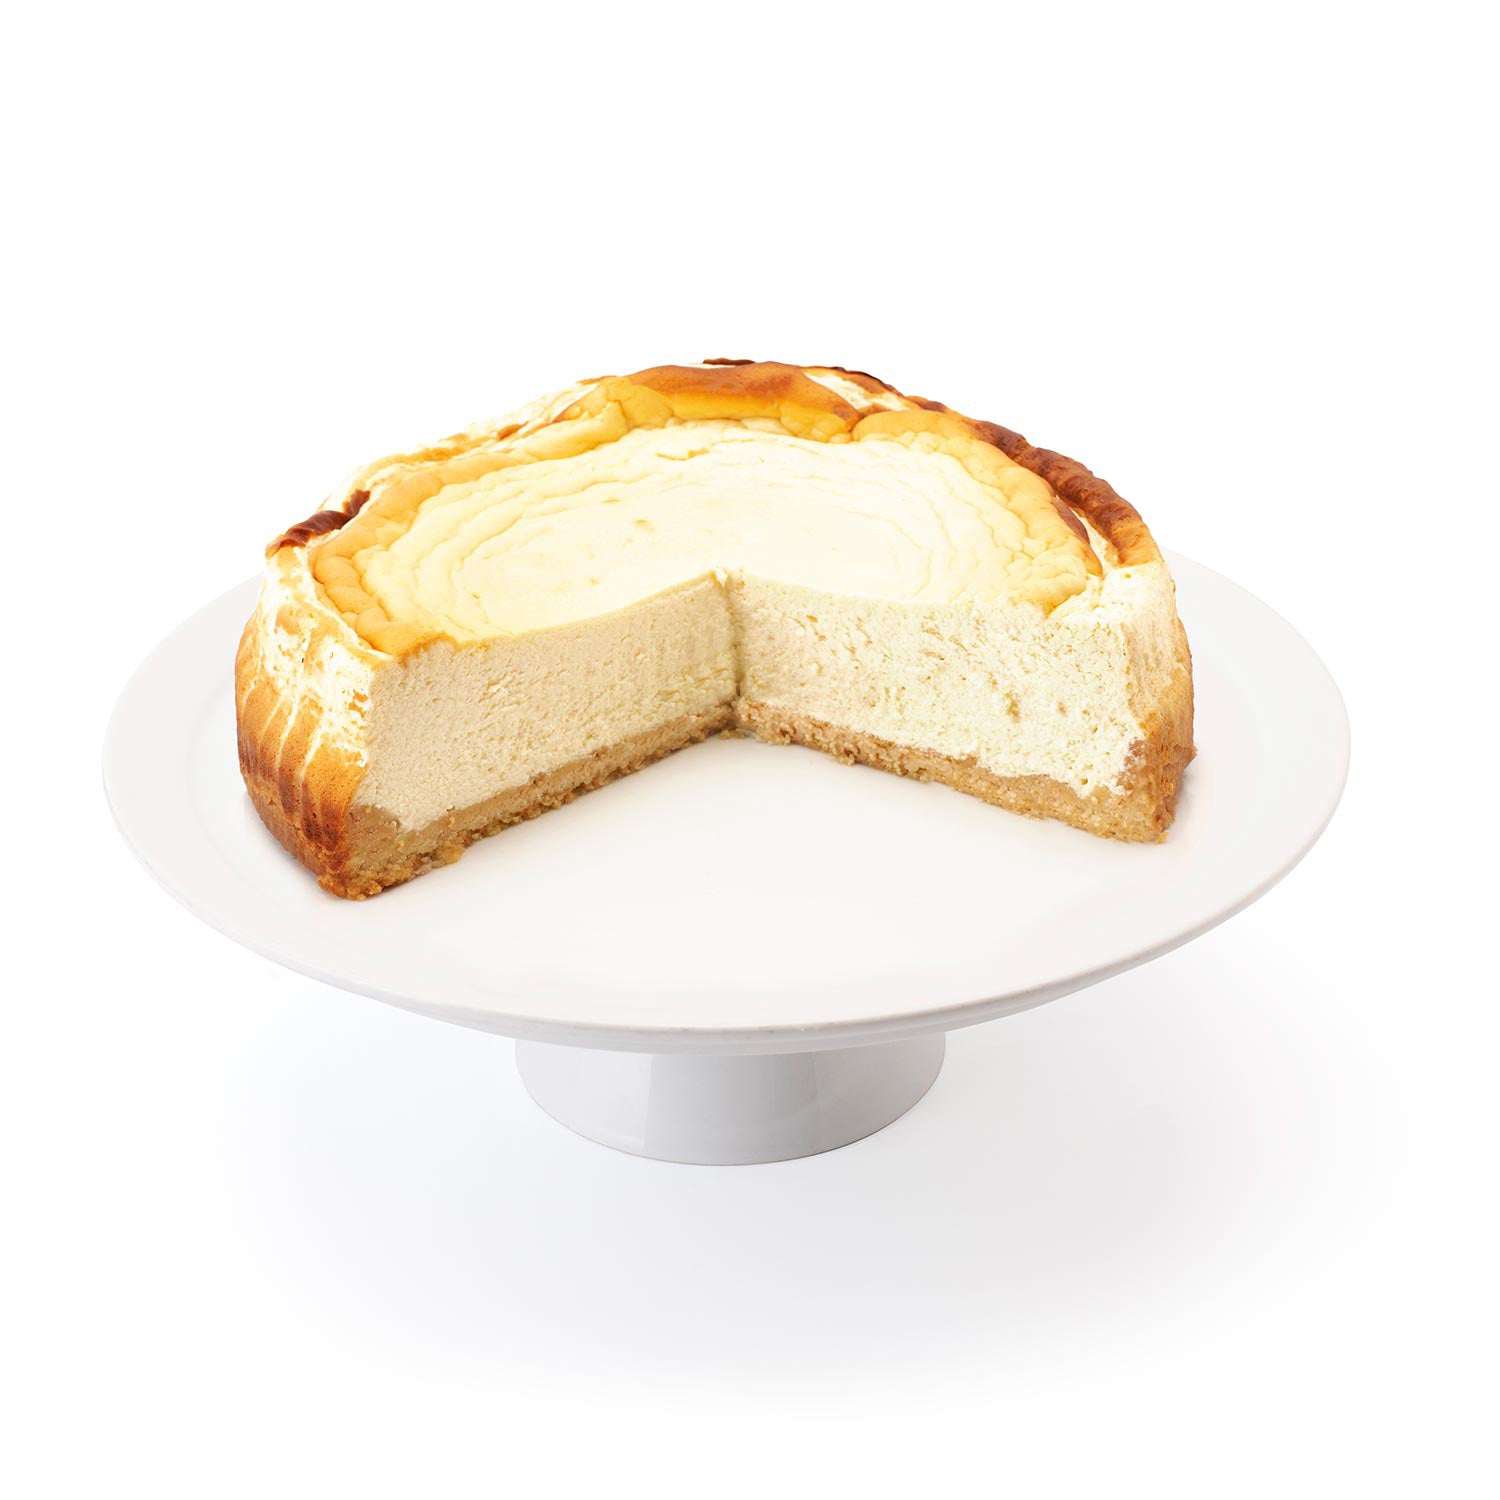 Topfentorte Austrian Cheesecake